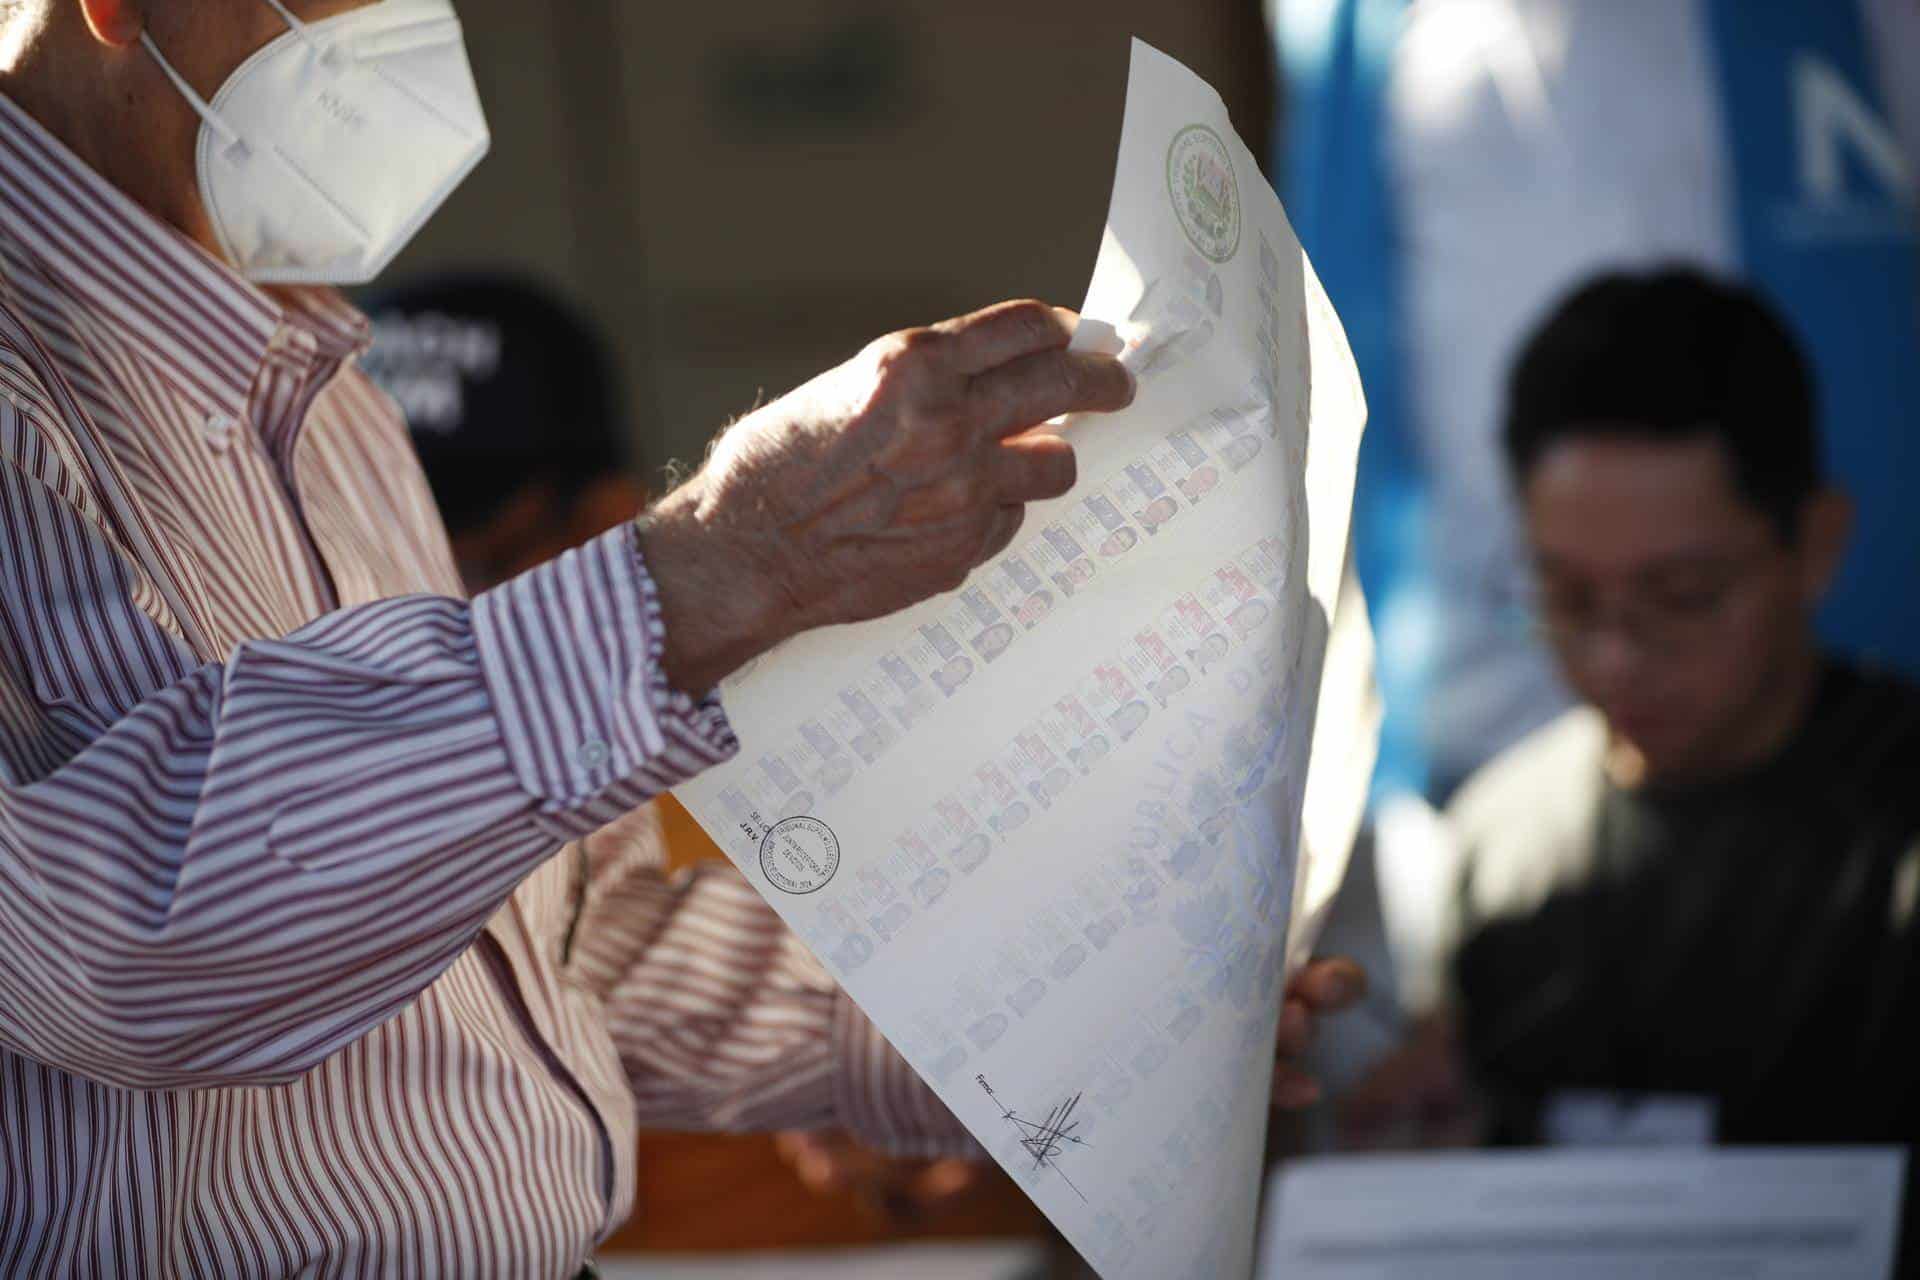 Observadores destacan un “desarrollo relativamente normal” de elecciones en El Salvador